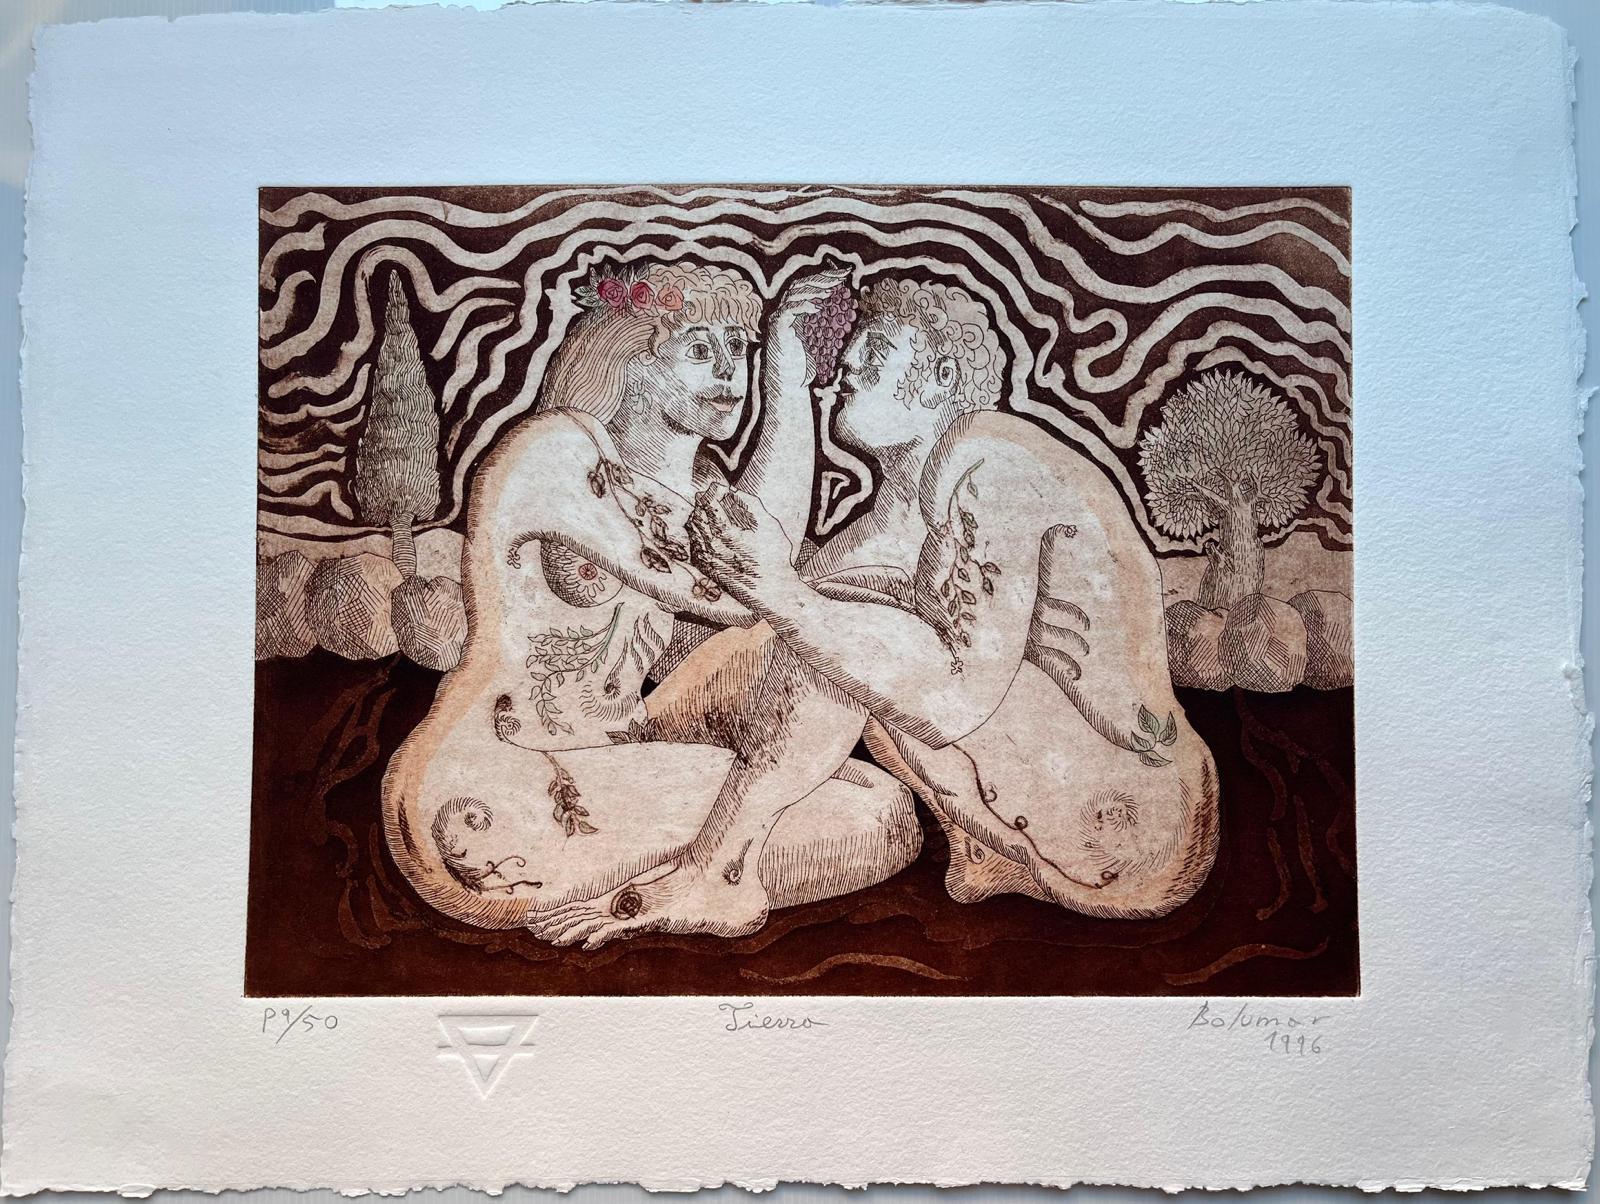 Magda Bolumar (Spain, 1936)
'Tierra (Carpeta ""Los cuatro elementos"")', 1996
etching, aquatint on paper Rives BFK 300 g.
19.7 x 27.6 in. (50 x 70 cm.)
Edition of 50
Unframed
ID: BOL1268-003-050_4
Hand-signed by